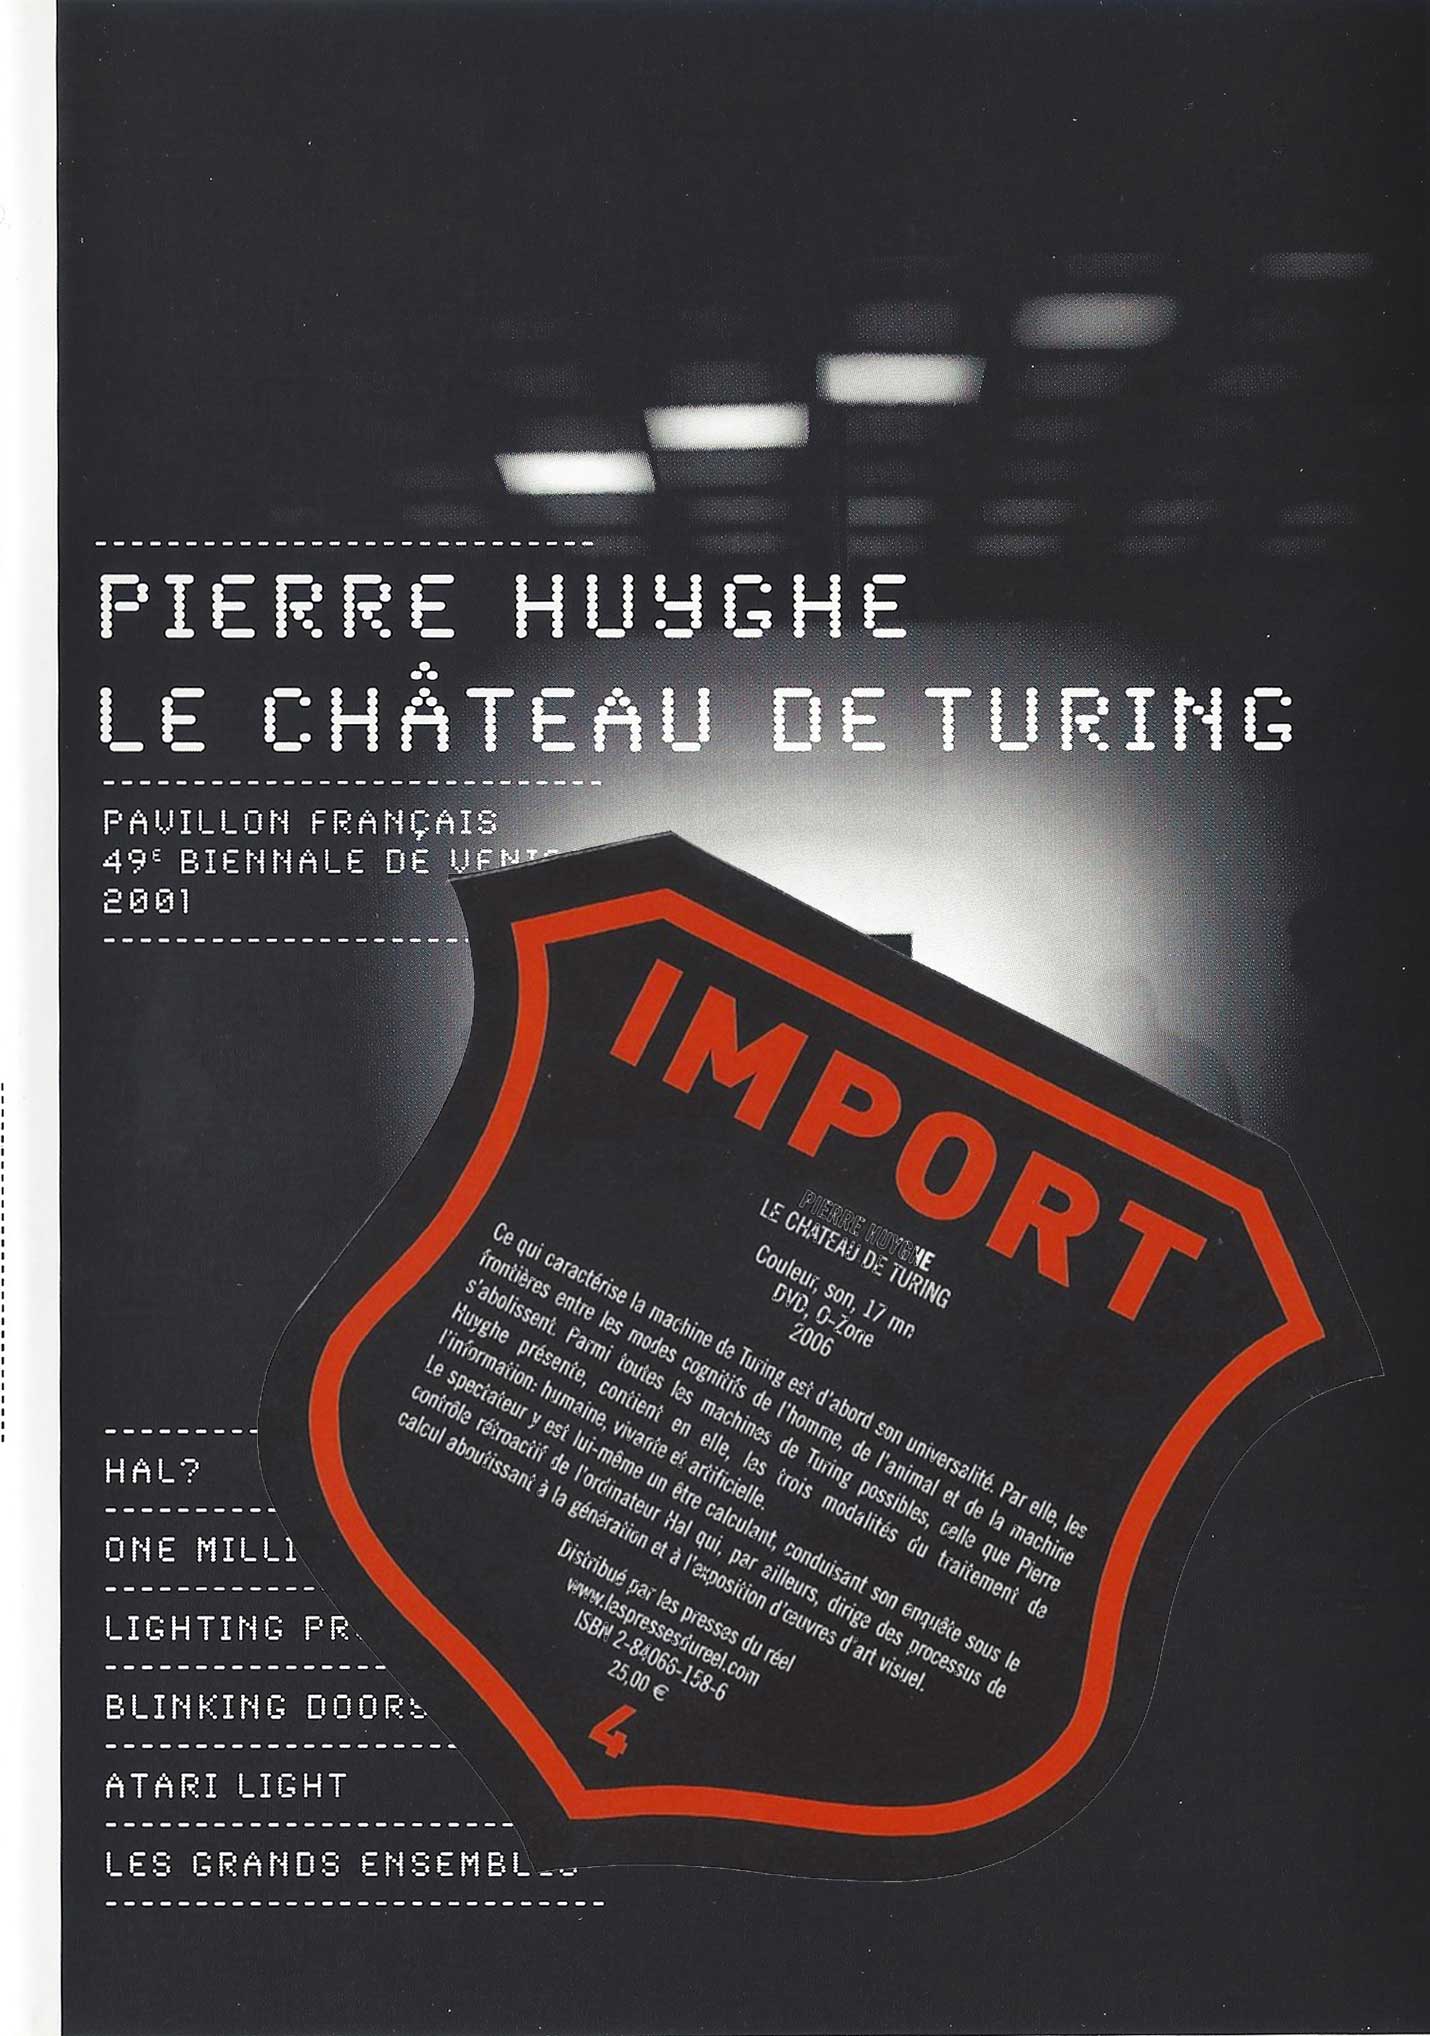 Pierre Huyghe - Le Chteau de Turing, 2006